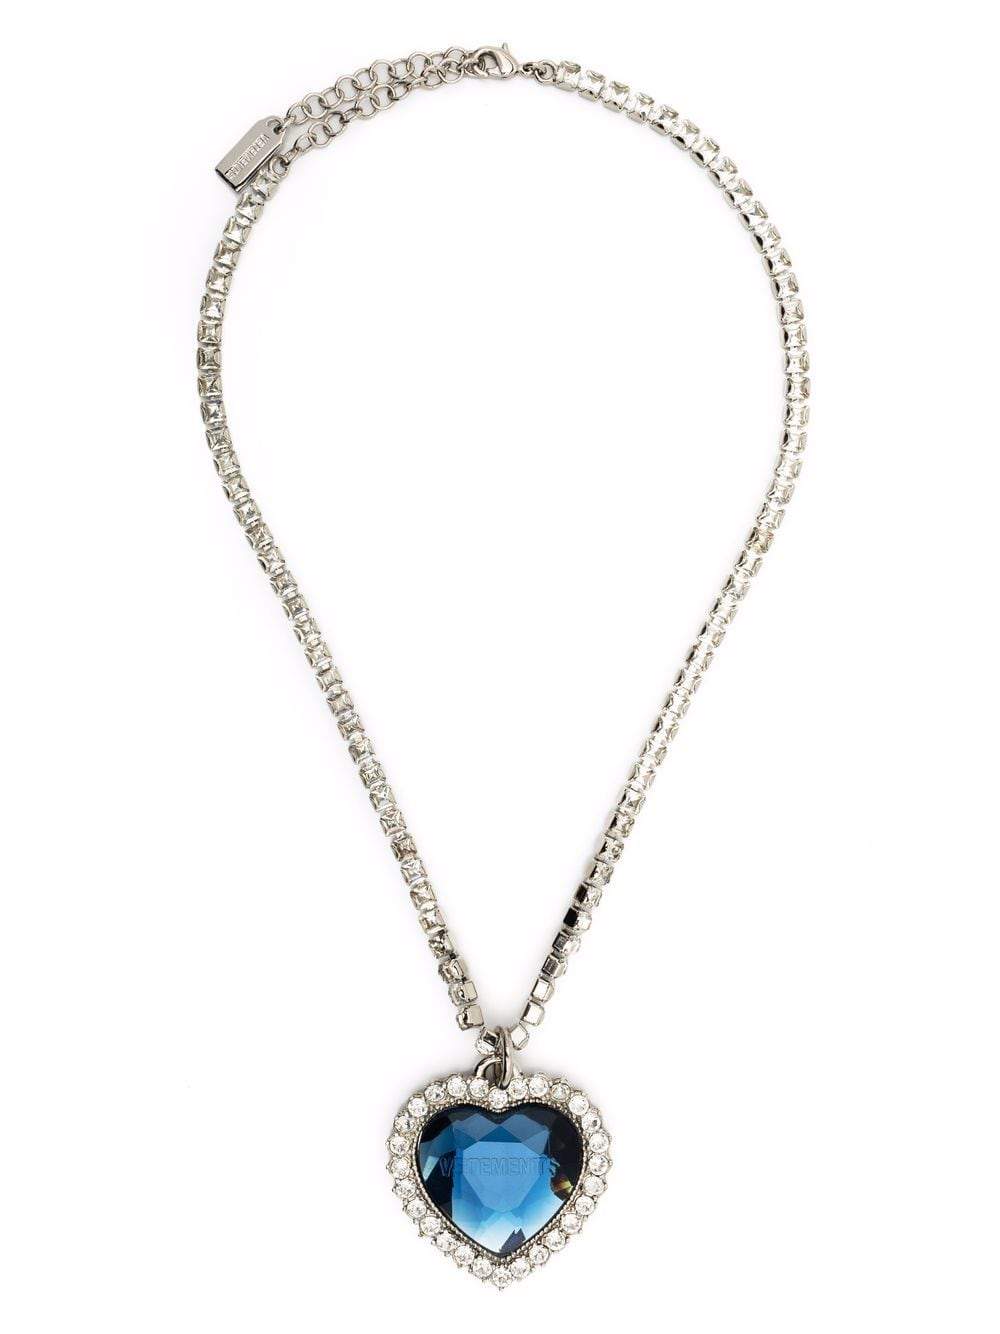 VETEMENTS Heart-shaped crystal pendant necklace Blue/Silver - MAISONDEFASHION.COM